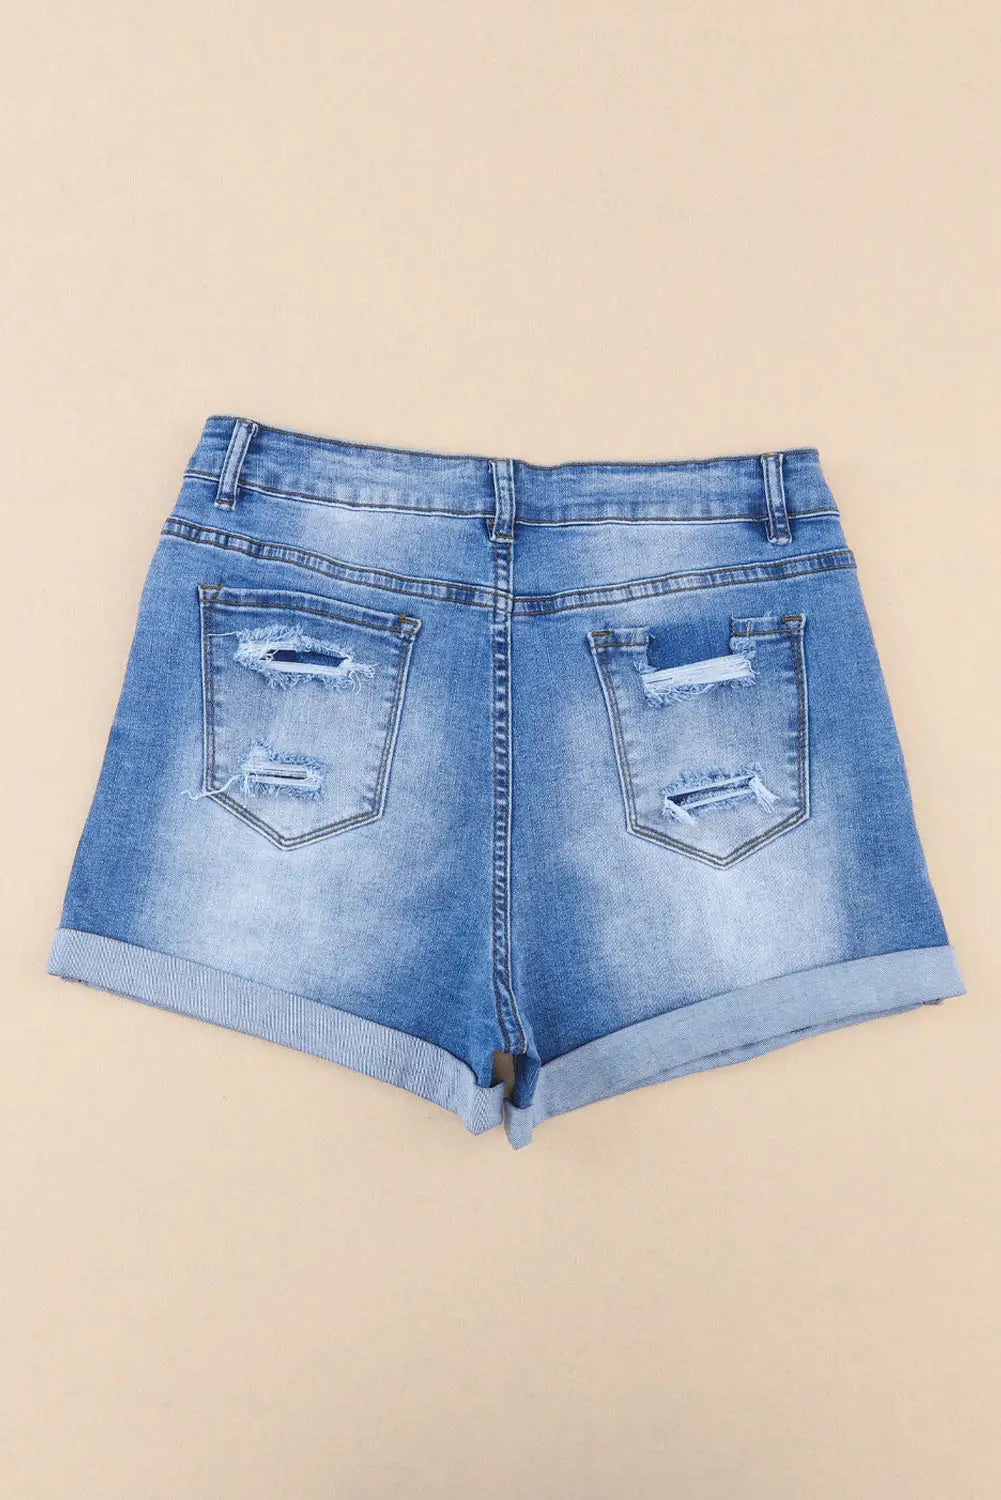 Sky blue vintage distressed high waist pocket denim shorts